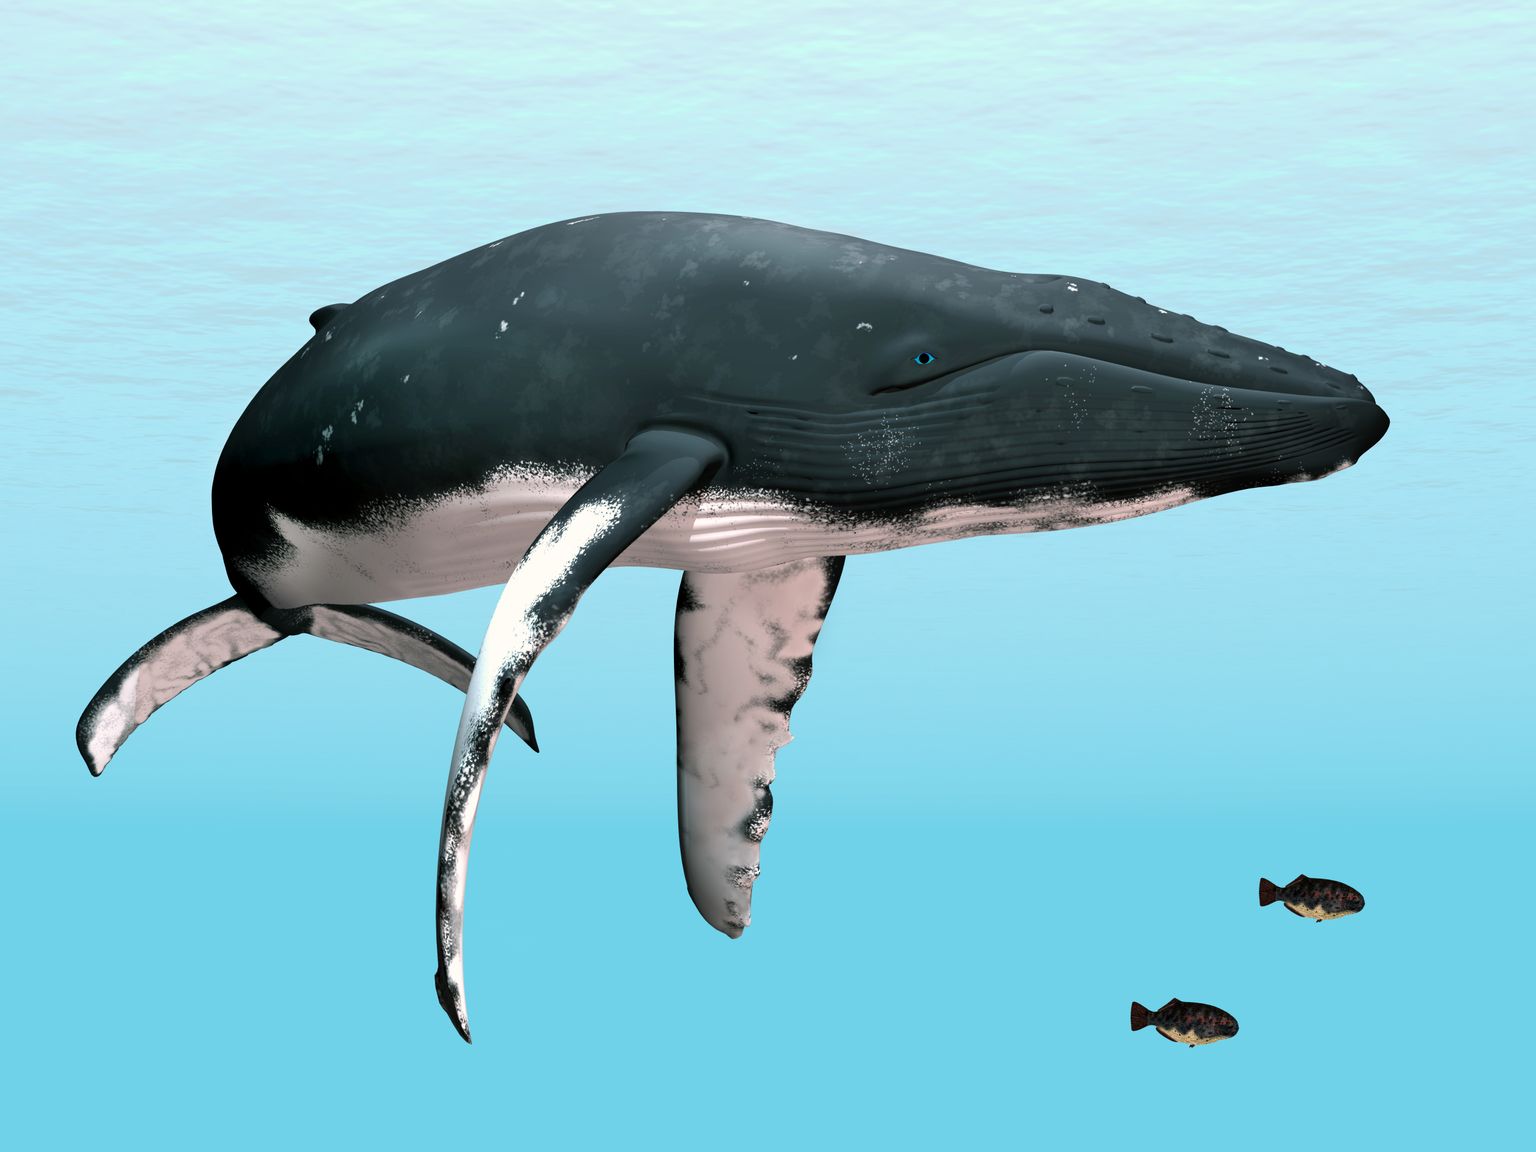 Vaala geneetika on kohastunud teda vähini viivate mutatsioonide eest kaitsma.